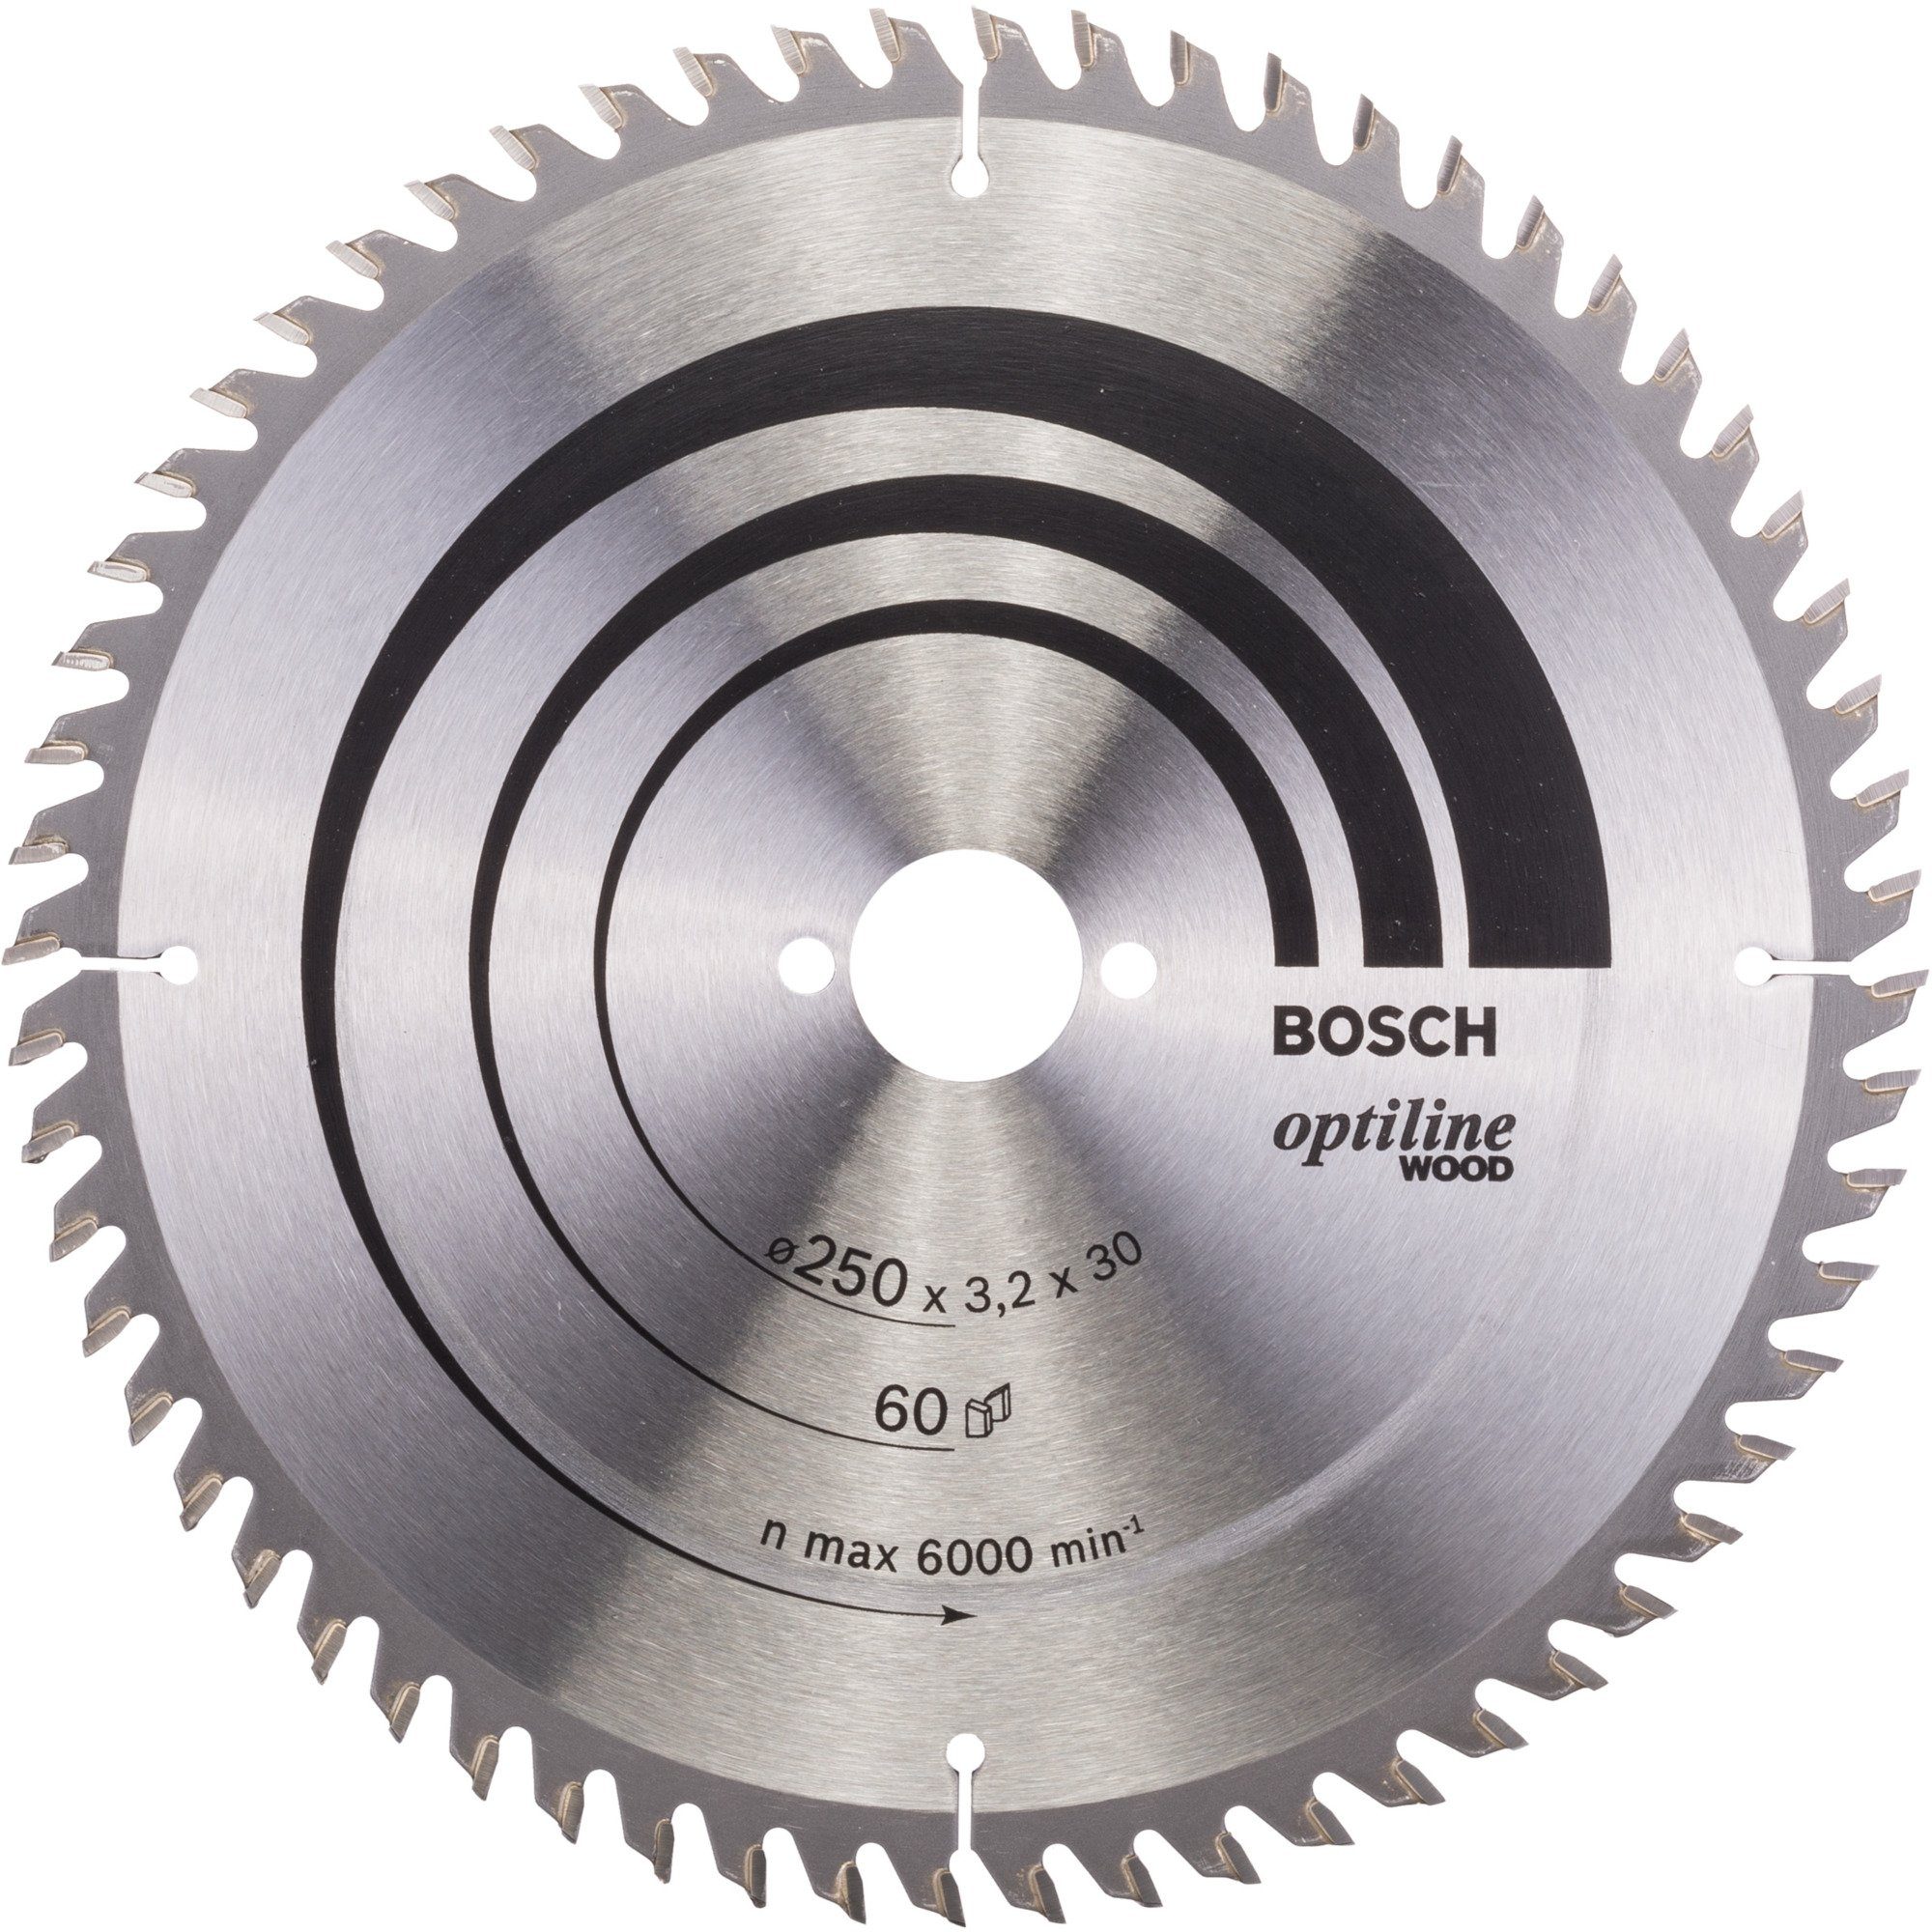 BOSCH Sägeblatt Bosch mm Maße: 250 Ø, Optiline Professional Ø Wood, Kreissägeblatt